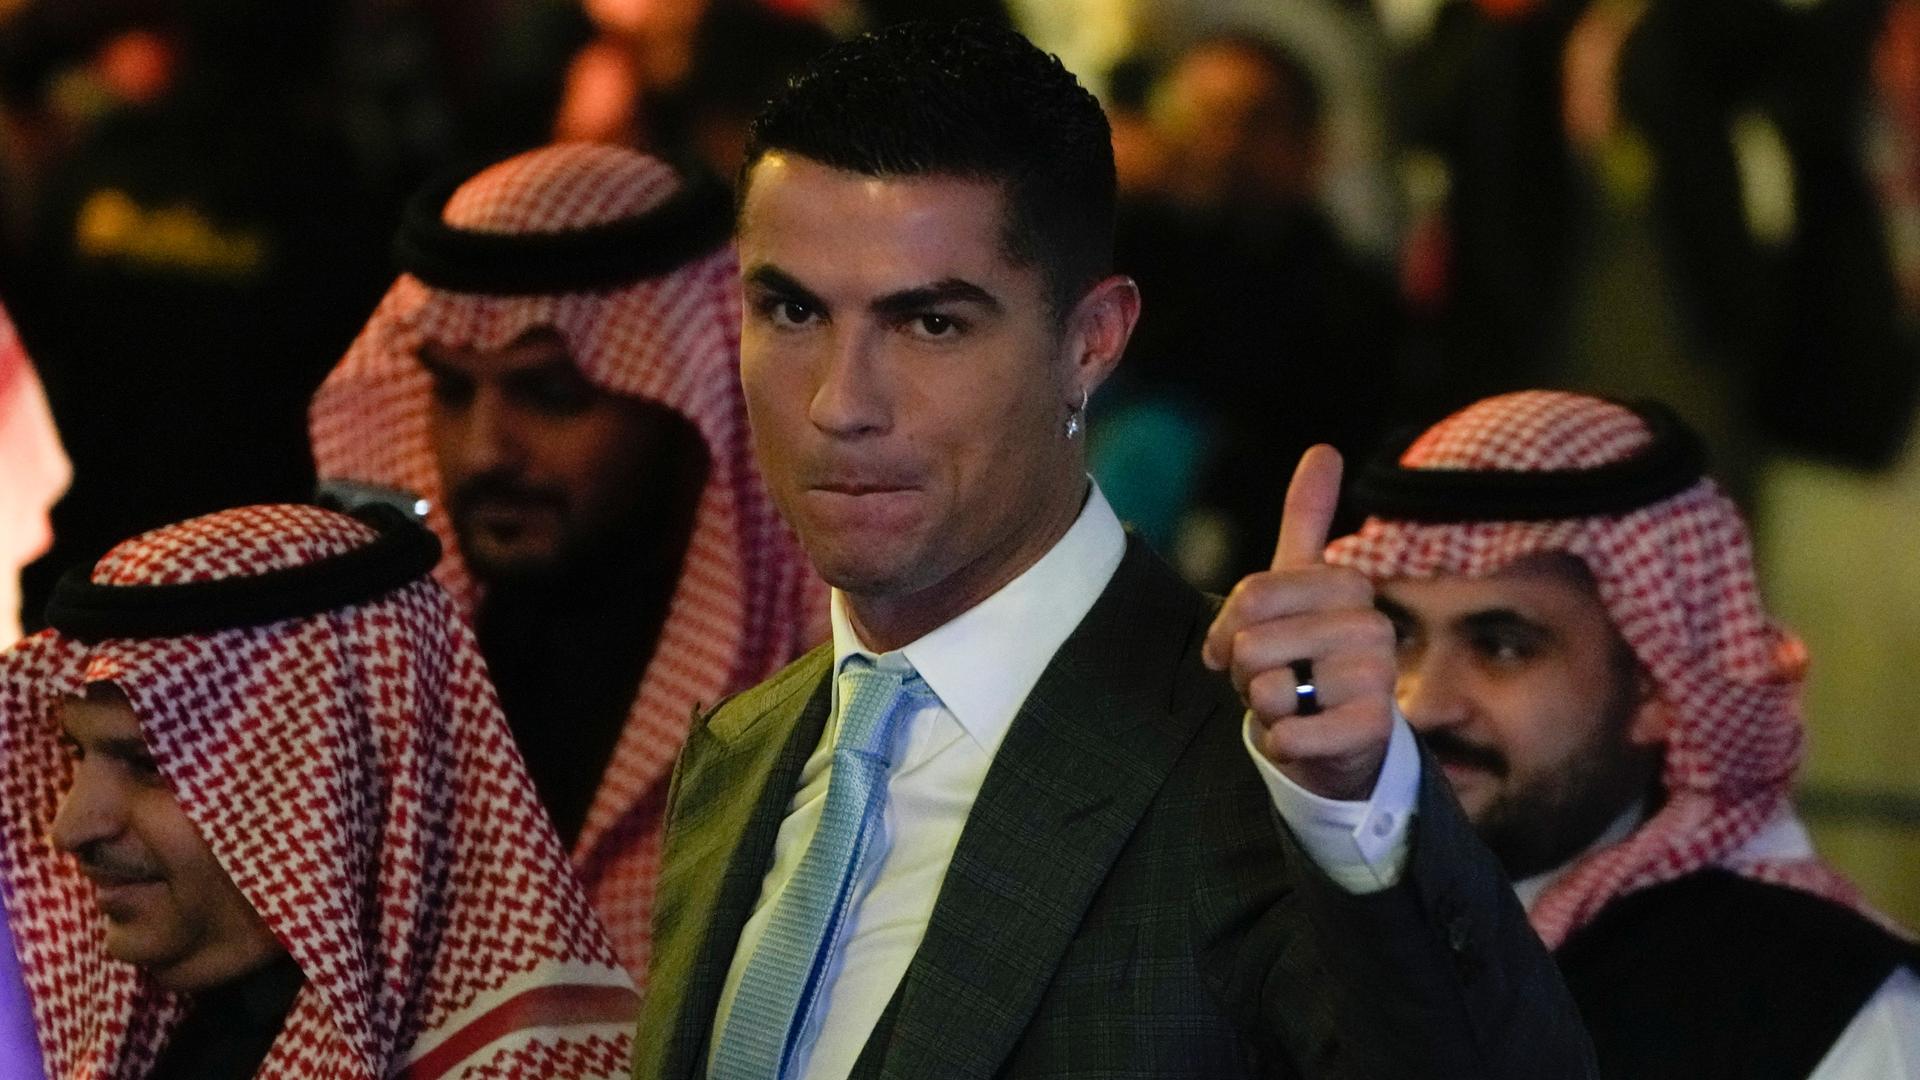 Das Foto zeigt den Fußball-Spieler Cristiano Ronaldo im Anzug. Im Hinter-Grund sieht man Männer aus dem Land Saudi-Arabien mit typischem Kopf-Tuch.